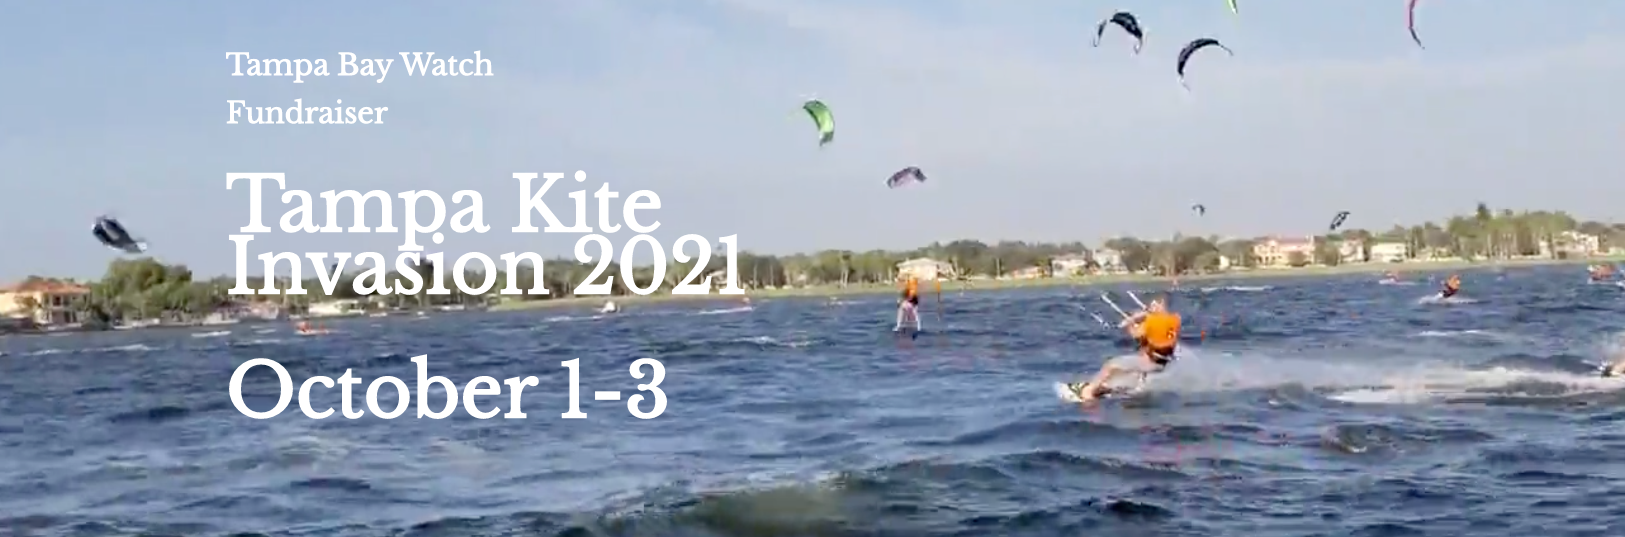 Wednesday 29th, 2021 Tampa Kite Invasion update